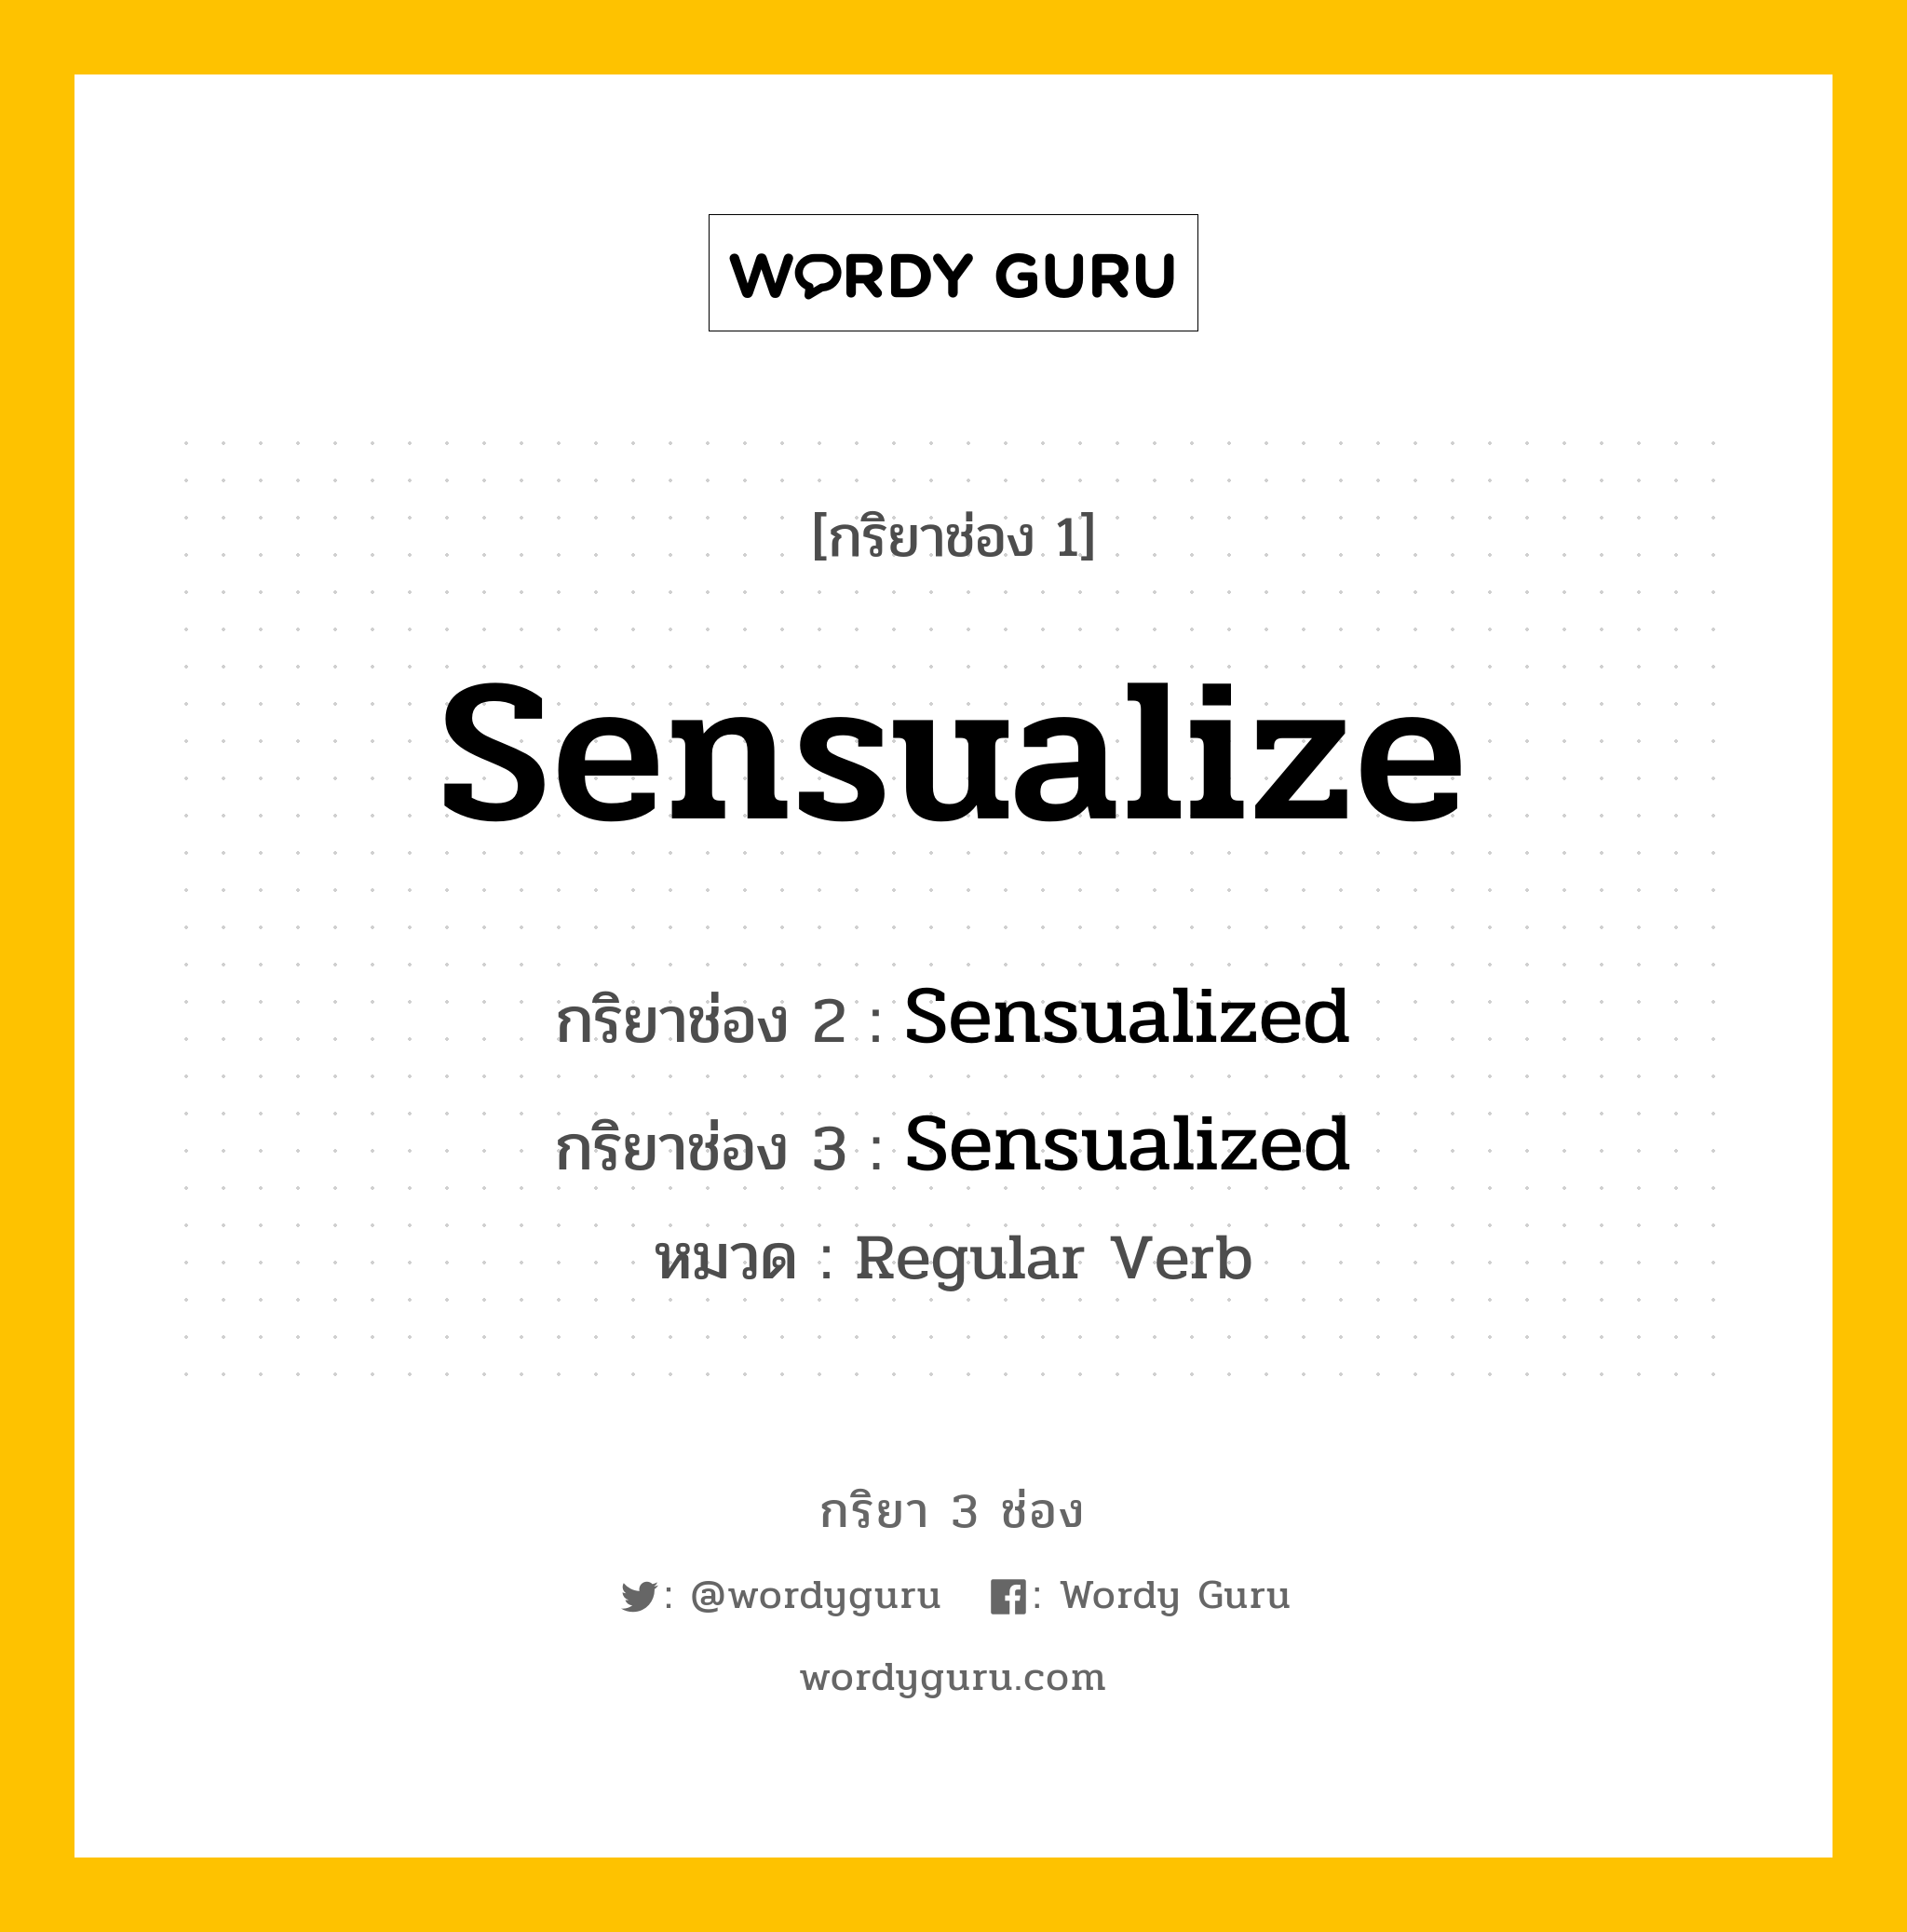 กริยา 3 ช่อง: Sensualize ช่อง 2 Sensualize ช่อง 3 คืออะไร, กริยาช่อง 1 Sensualize กริยาช่อง 2 Sensualized กริยาช่อง 3 Sensualized หมวด Regular Verb หมวด Regular Verb